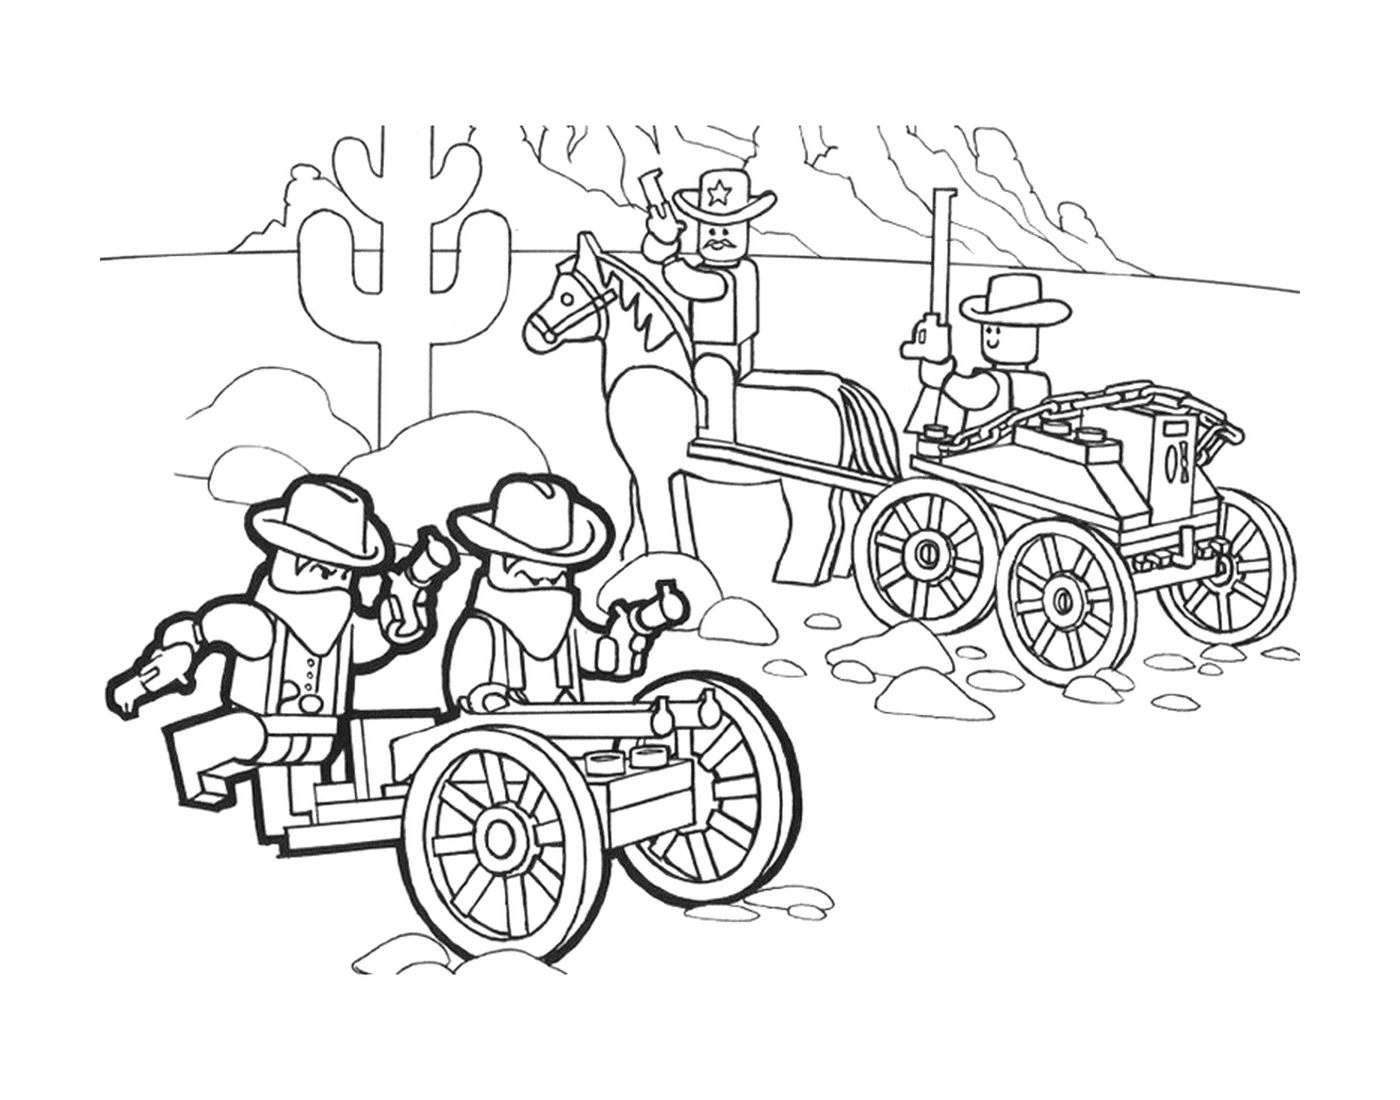  Cowboy e Lego wagon 